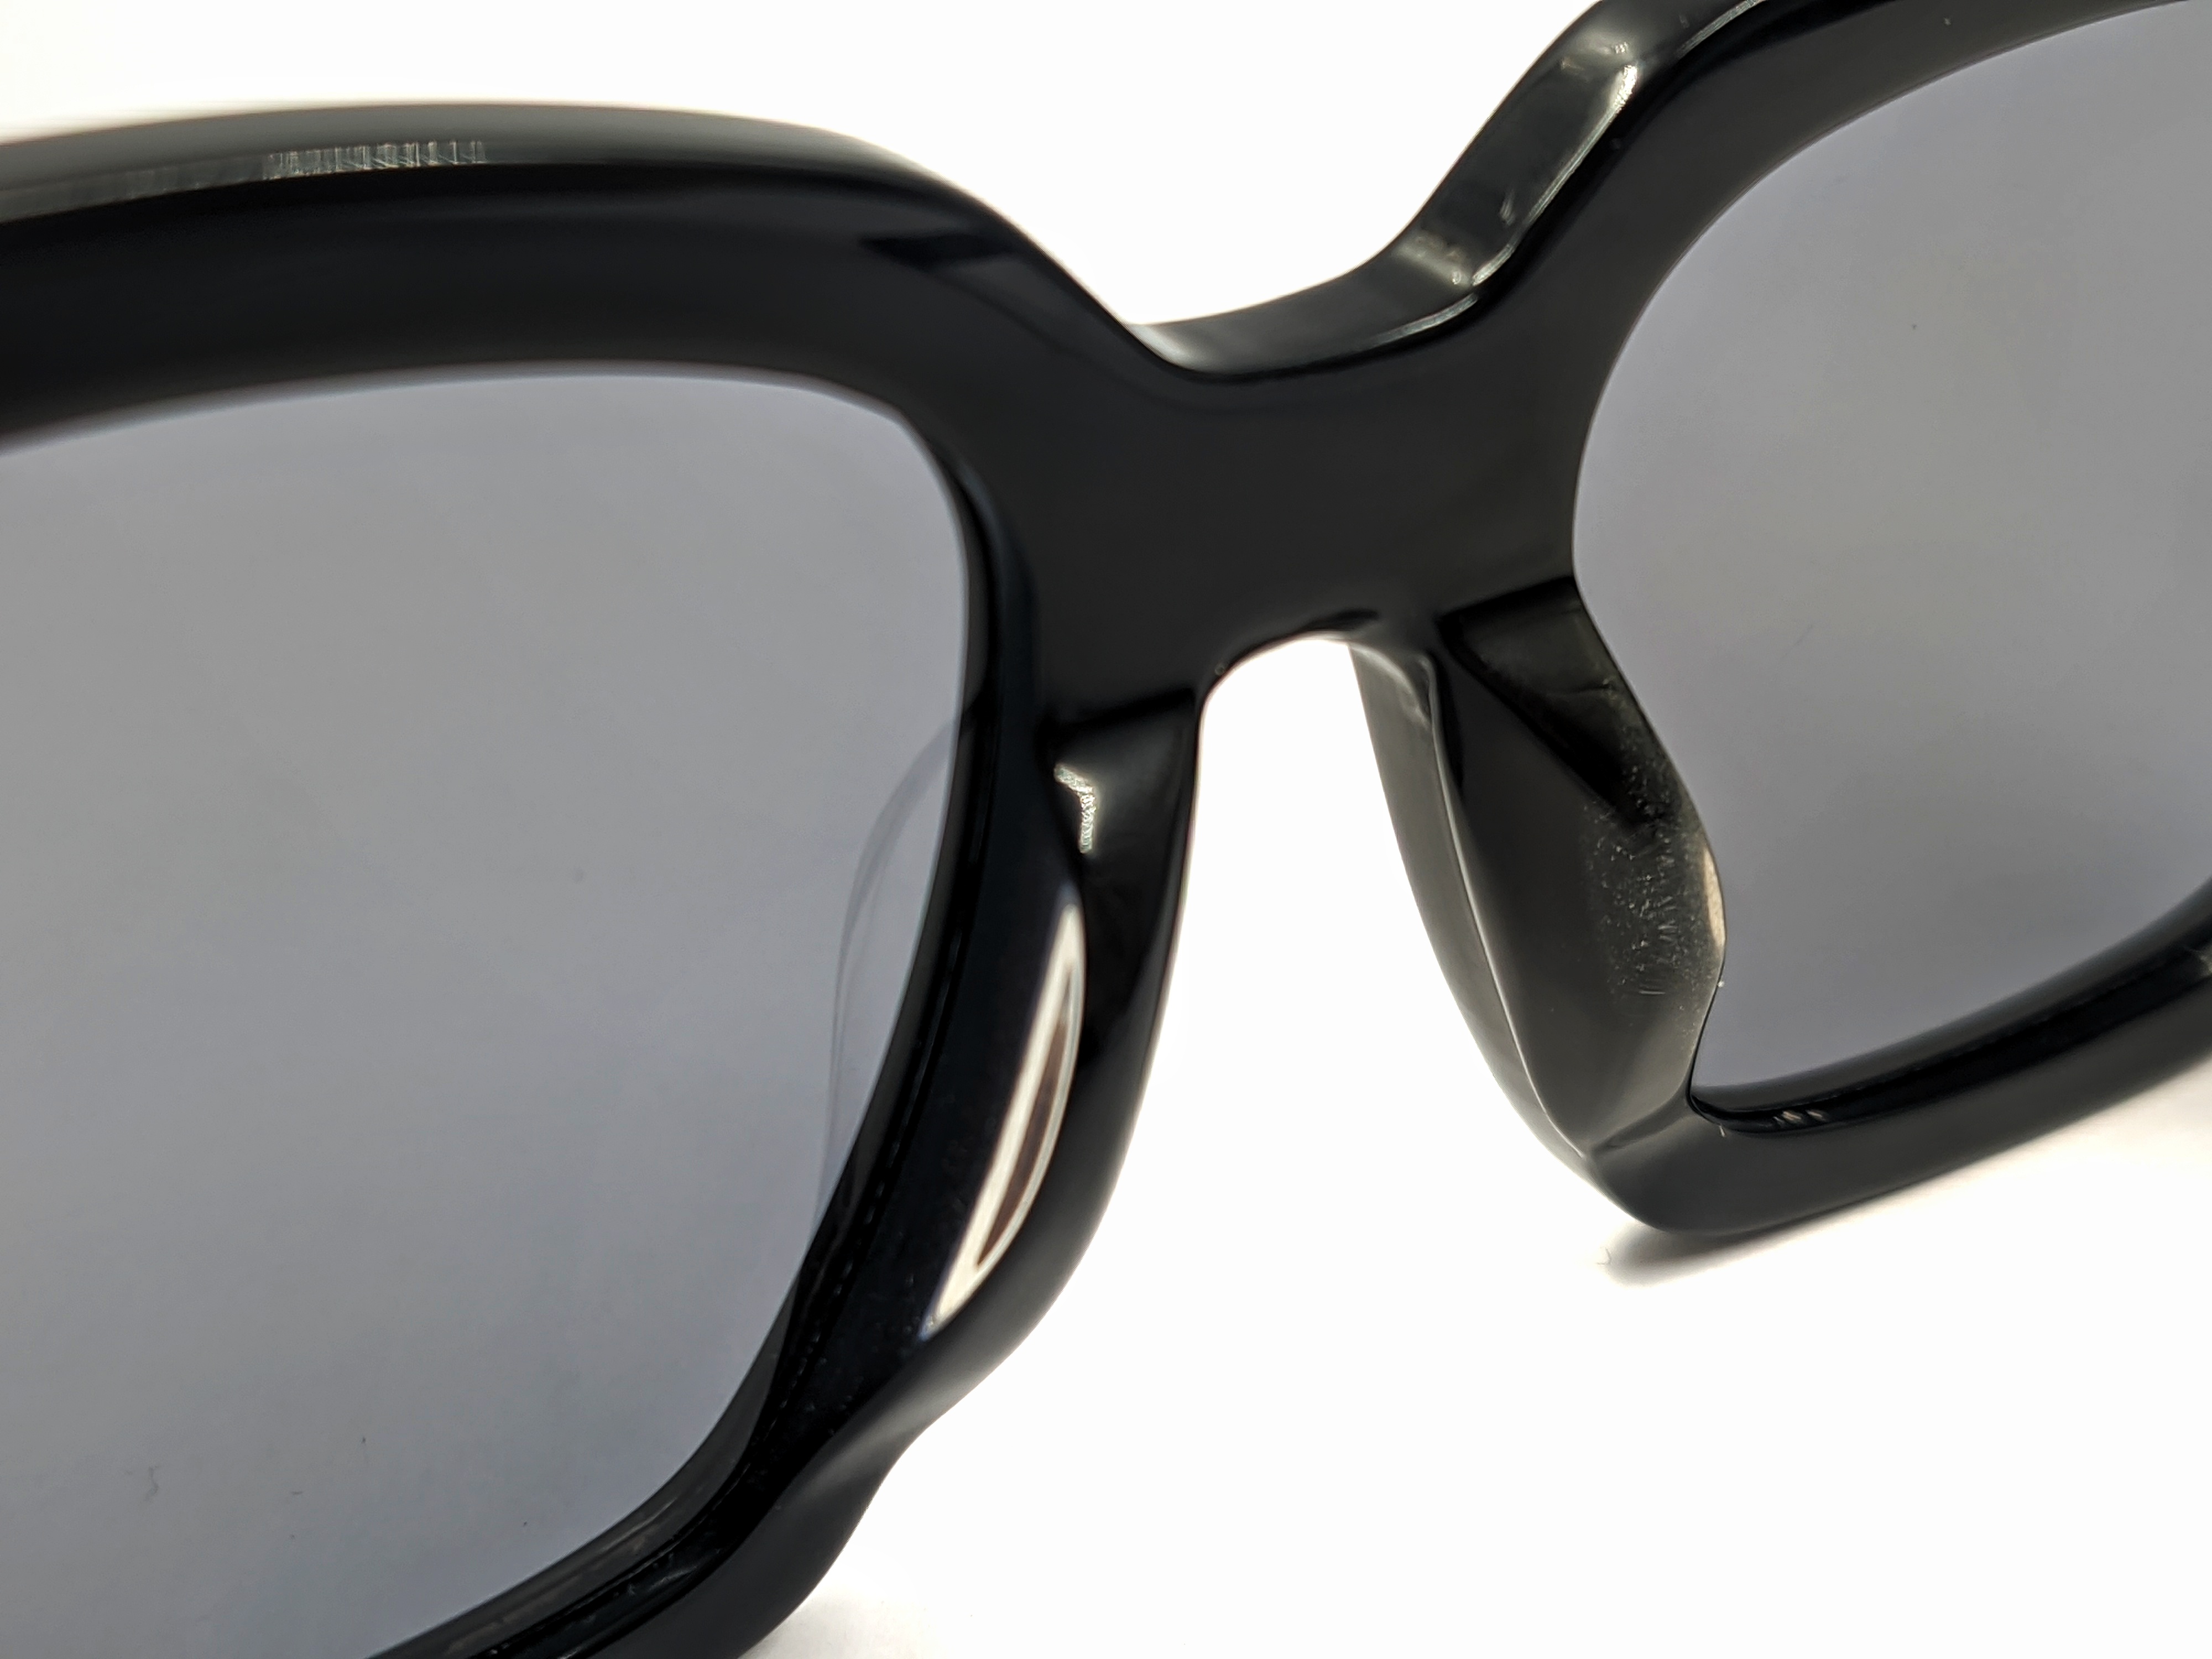 Gafas de sol negras personalizadas anti-ultravioleta con marco cuadrado polarizadas para mujer 2021 para hombre, tonos de gran tamaño UV400, moda clásica de lujo